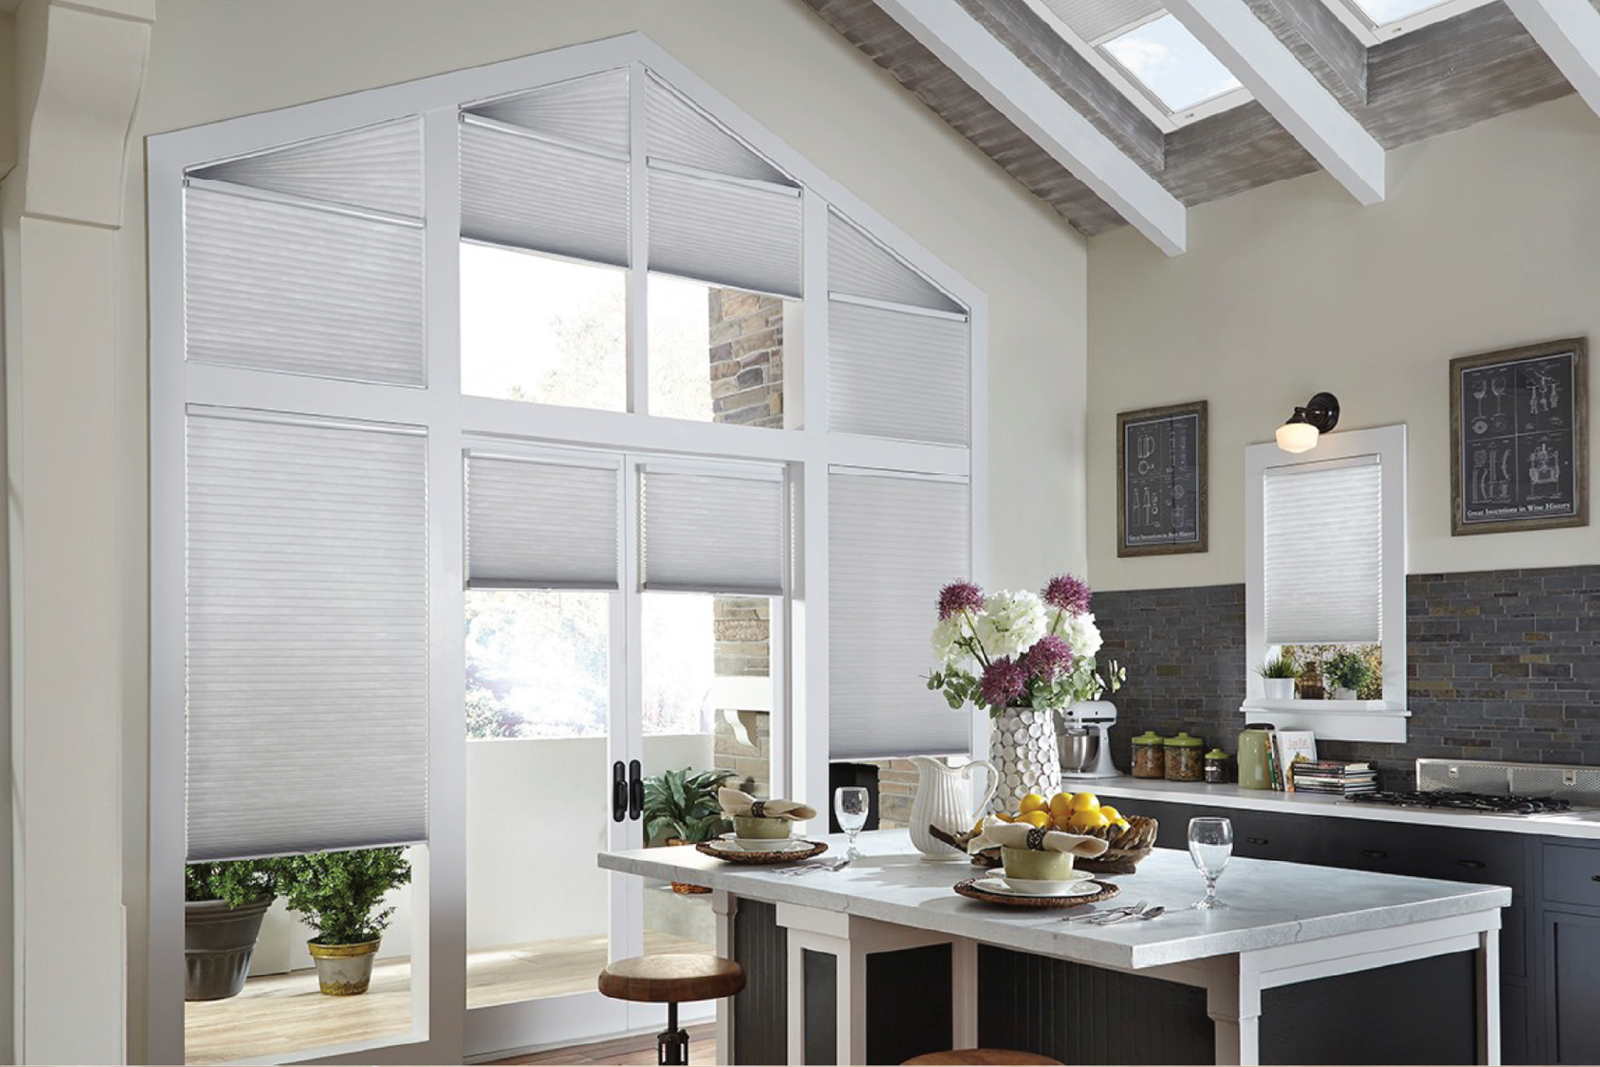 Với chất liệu bền đẹp, thiết kế trẻ trung năng động, rèm Honeycomb là lựa chọn rất phù hợp cho không gian phòng bếp.